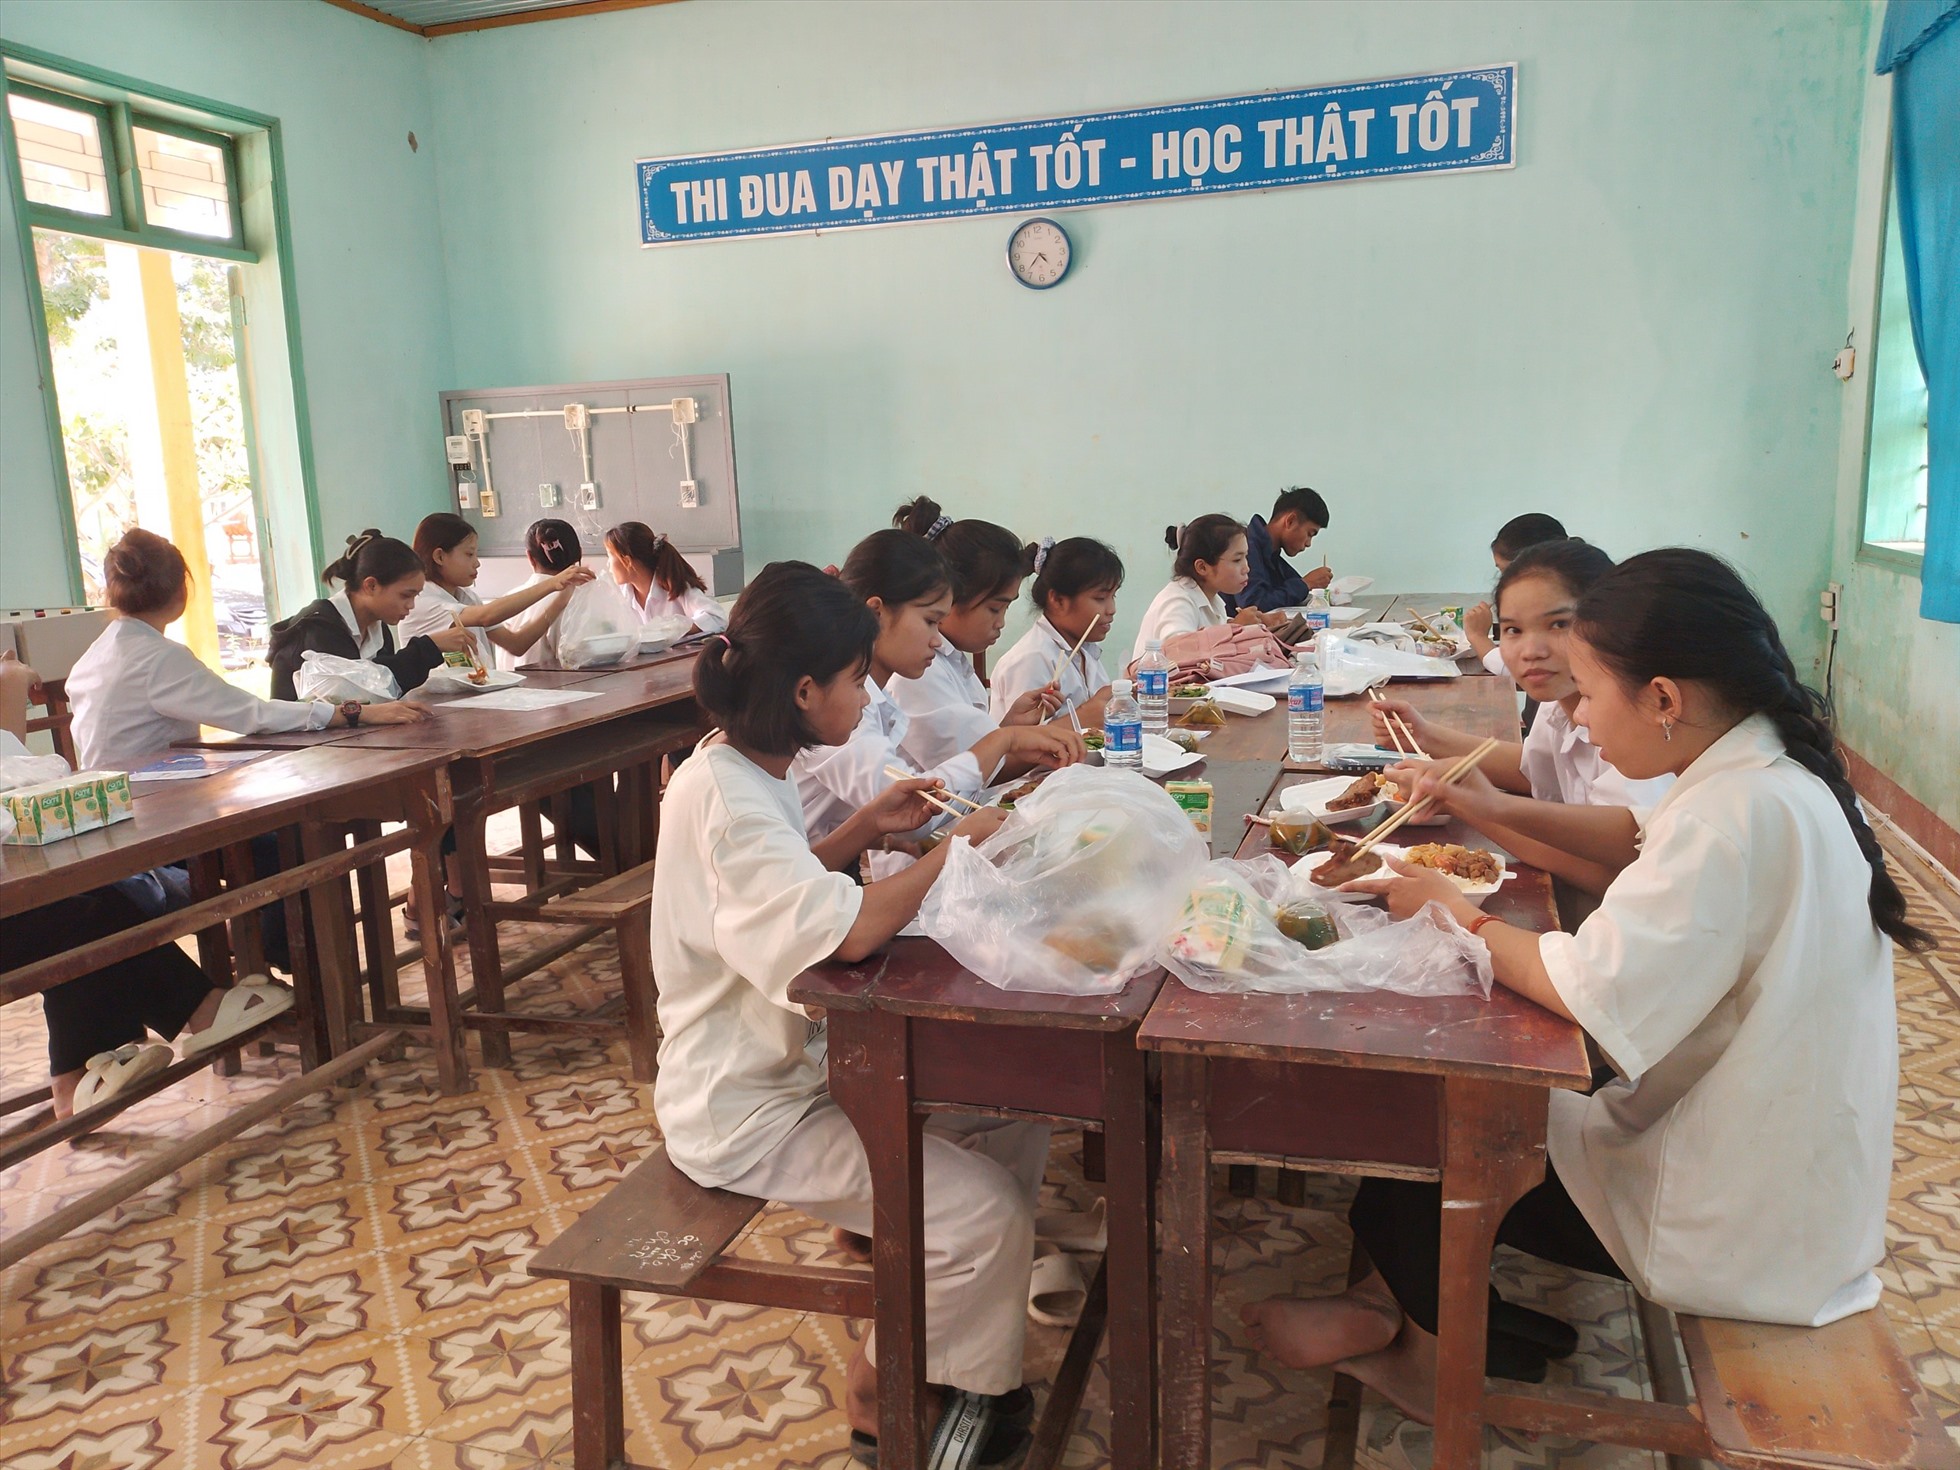 Bữa trưa miễn phí của các thí sinh dự thi ở điểm thi Trường THPT Đakrông. Ảnh: Phương Nam.